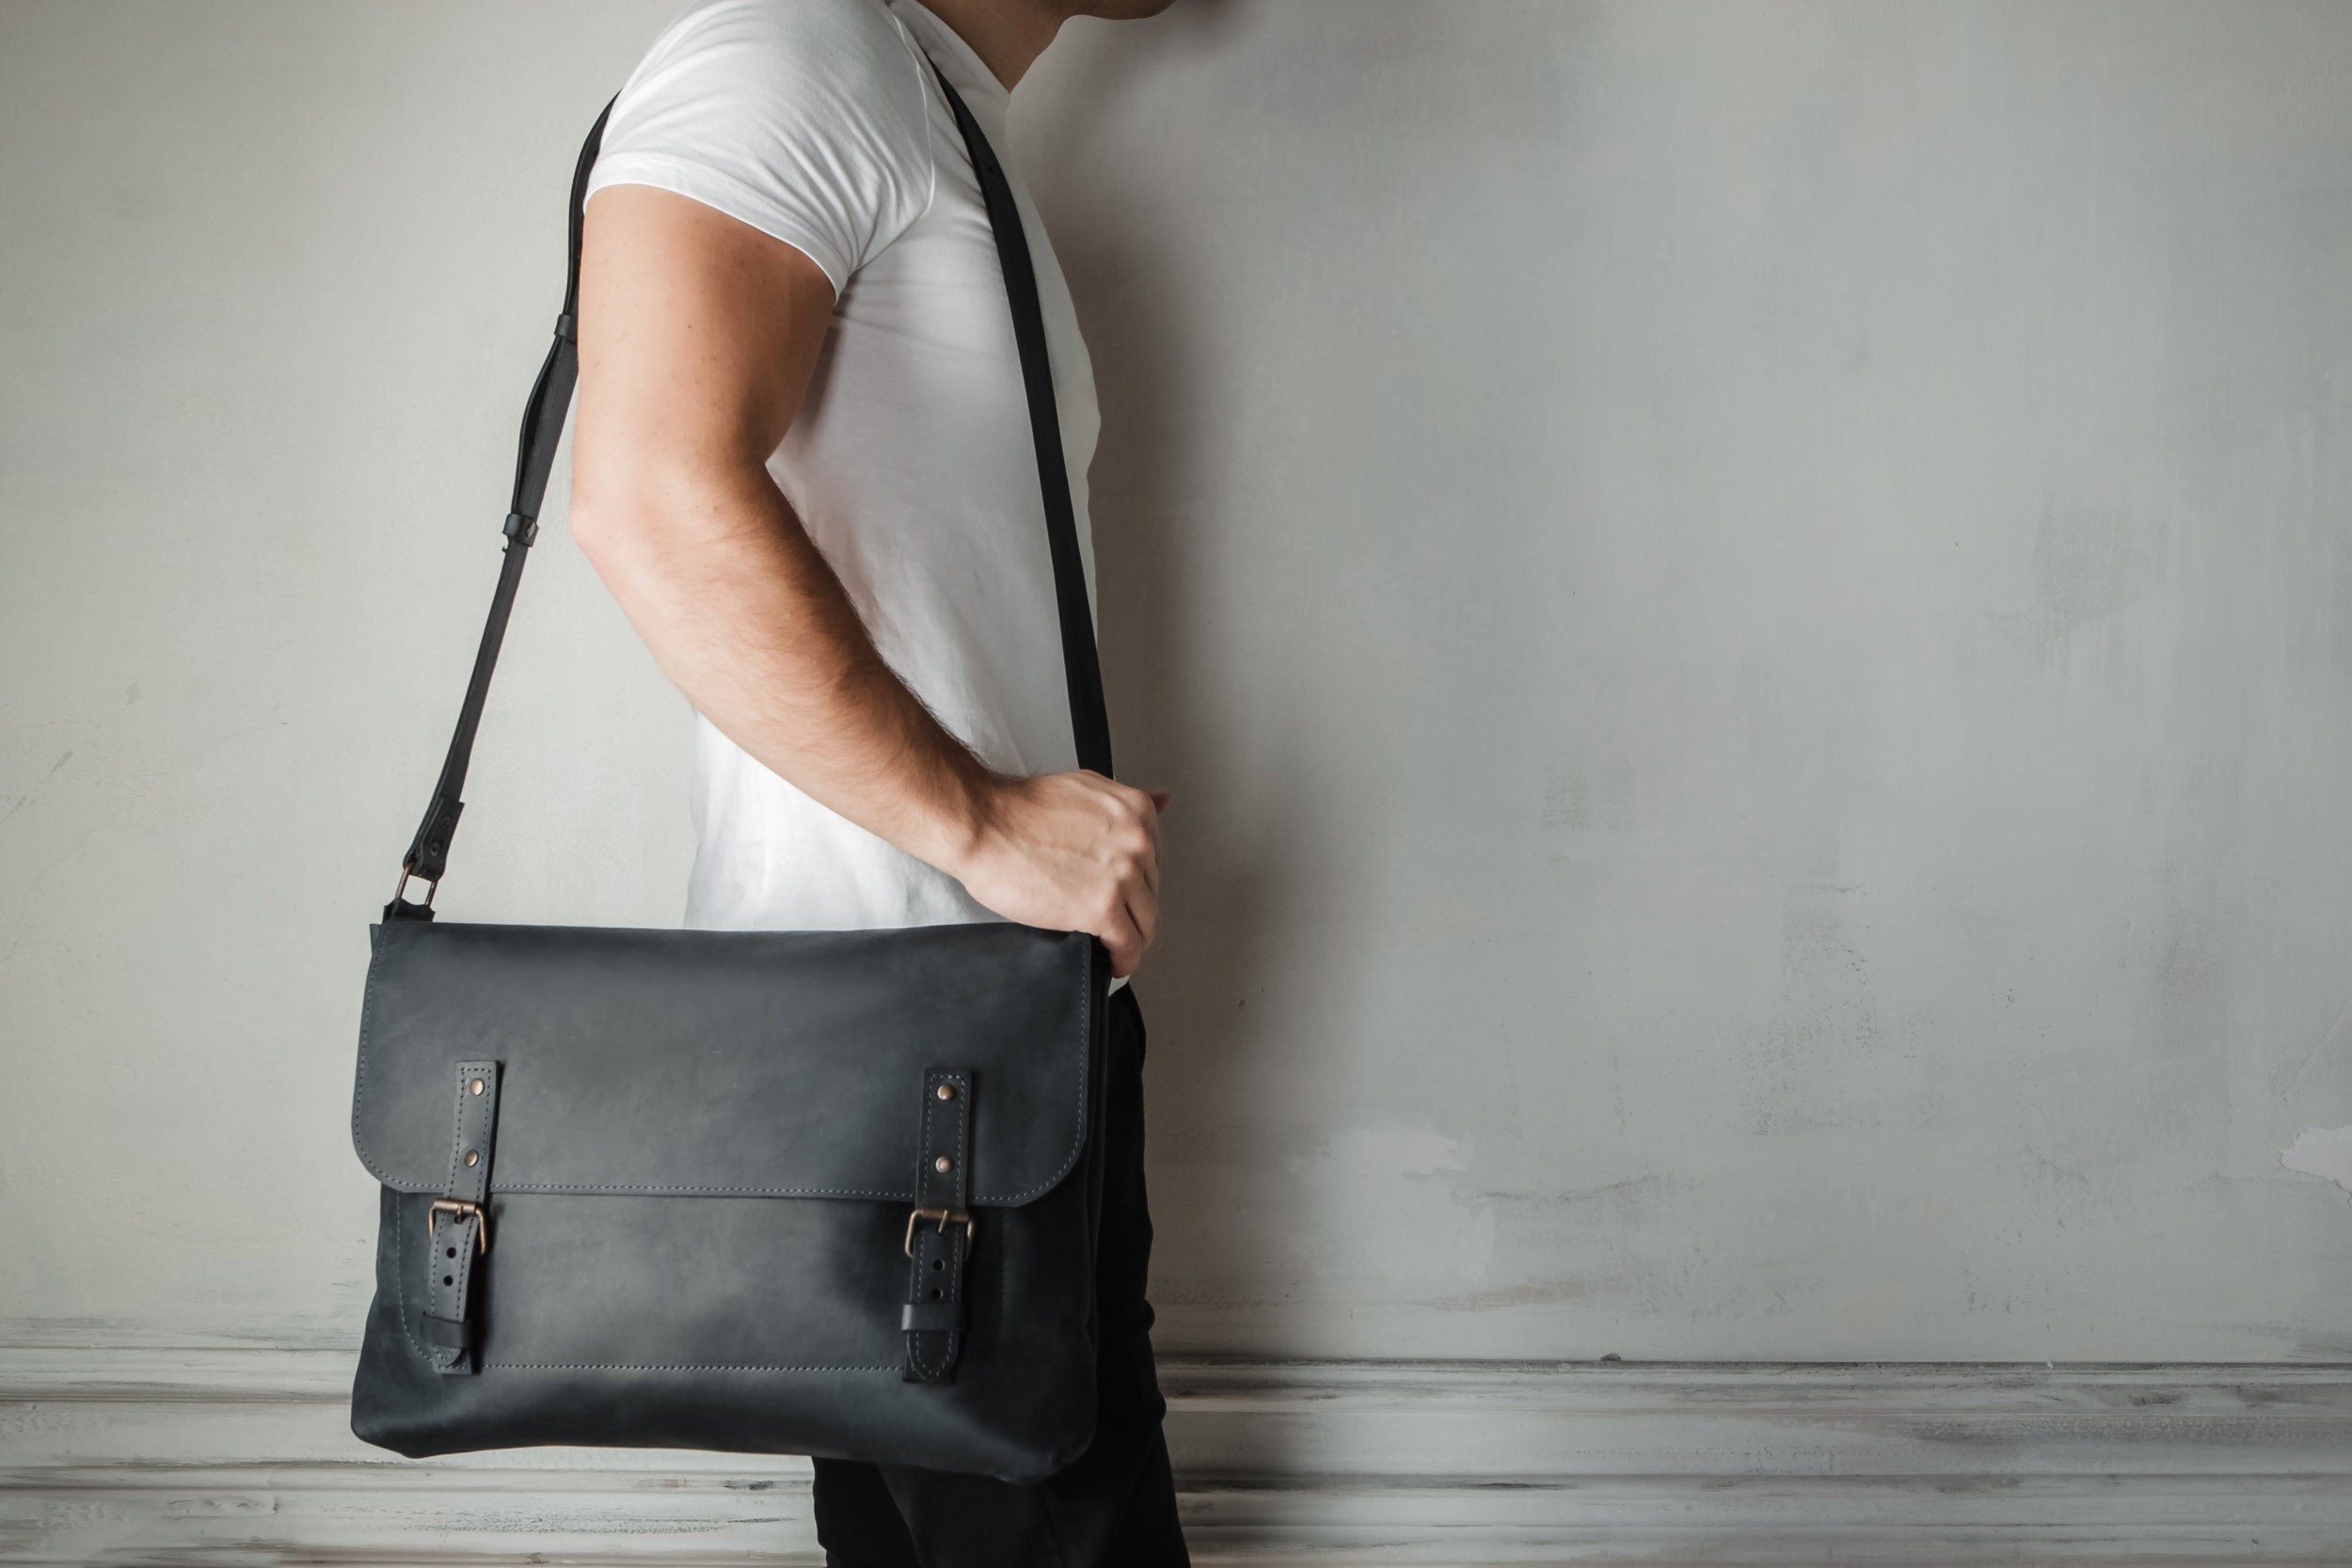 Black Leather Mens Tablet Messenger Bag Small Side Bag Black Shoulder